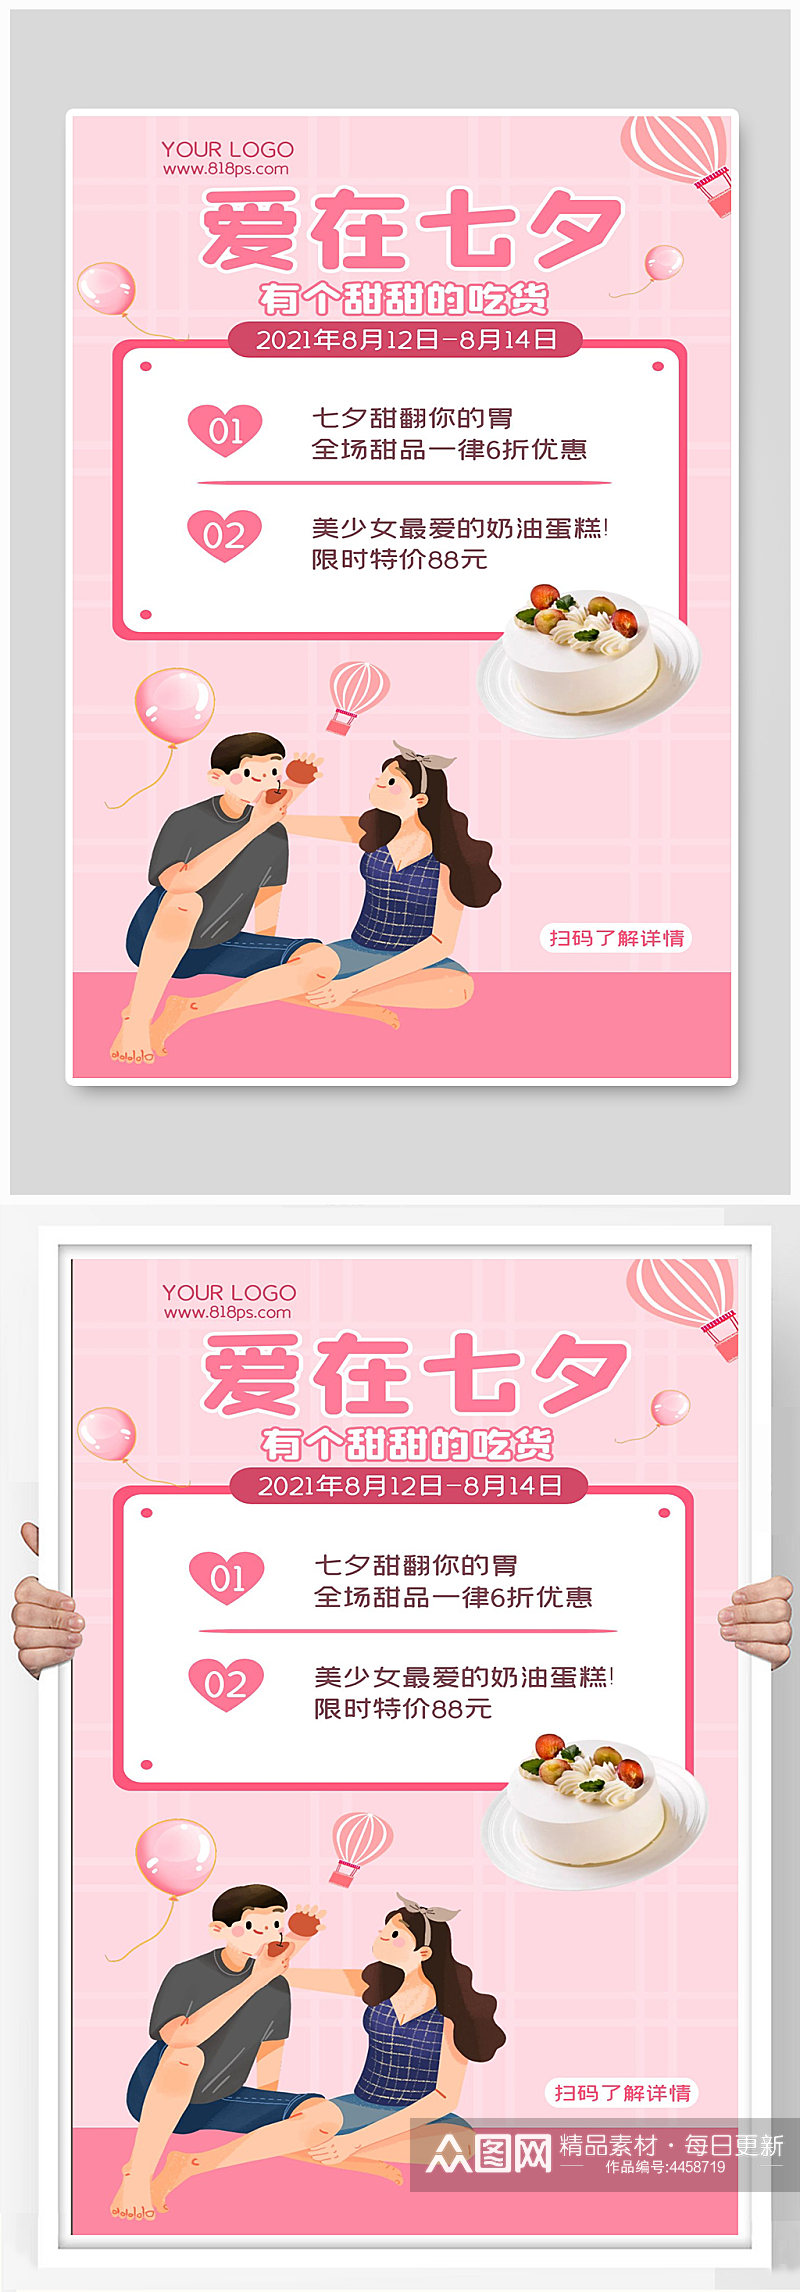 七夕情人节活动宣传海报设计爱在七夕素材